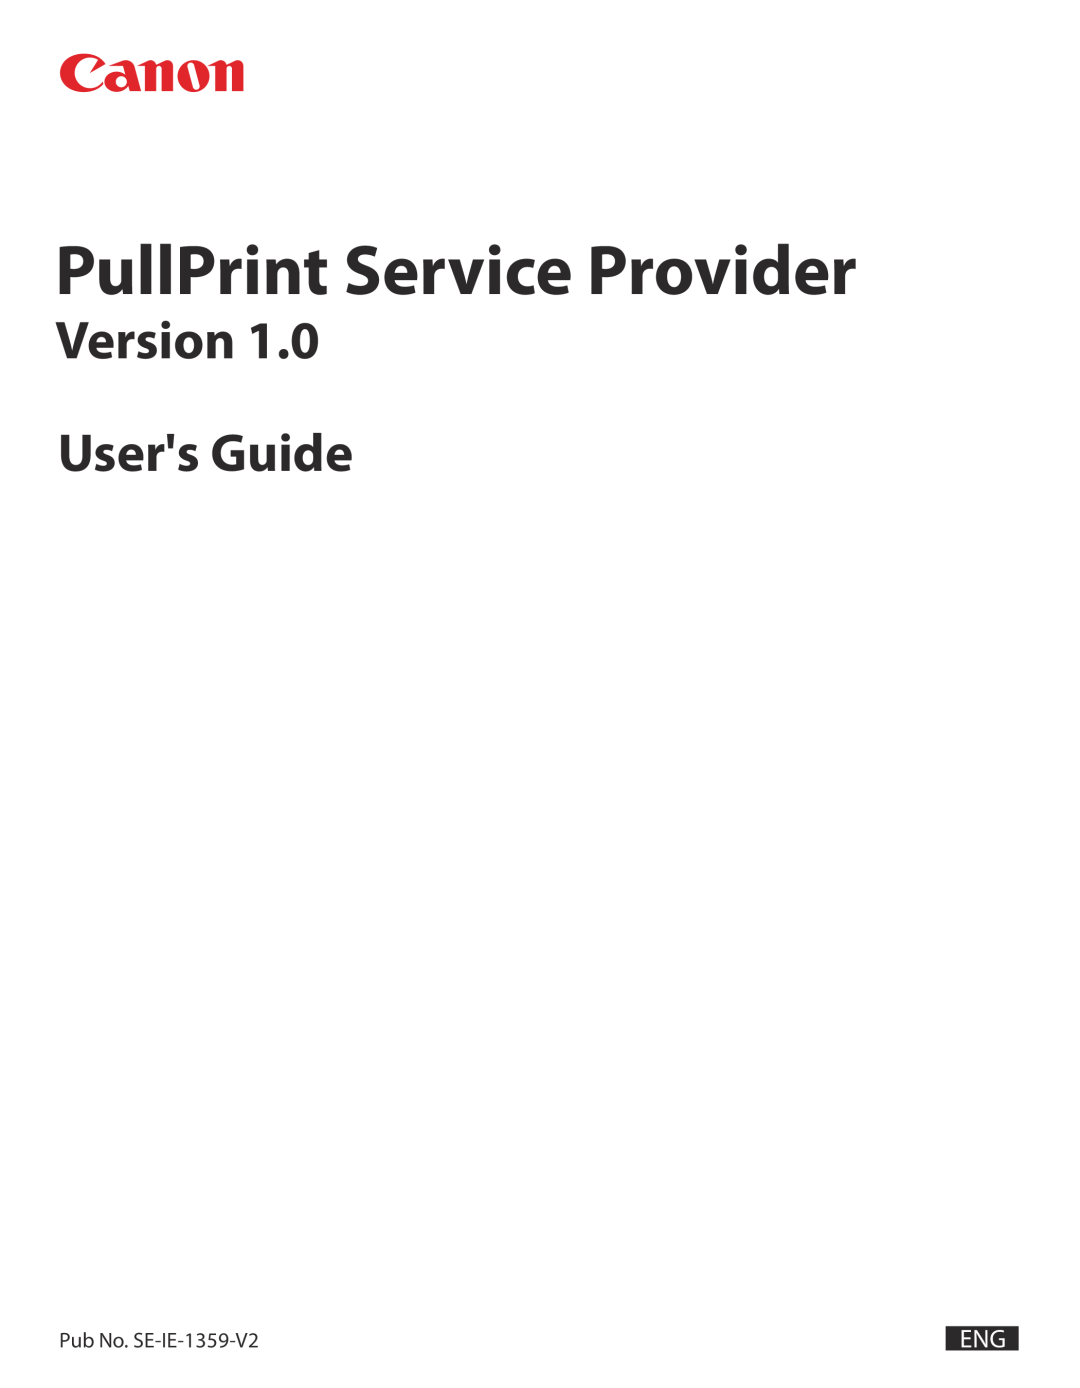 Canon manual Pub No. SE-IE-1359-V2, PullPrint Service Provider, Version Users Guide 